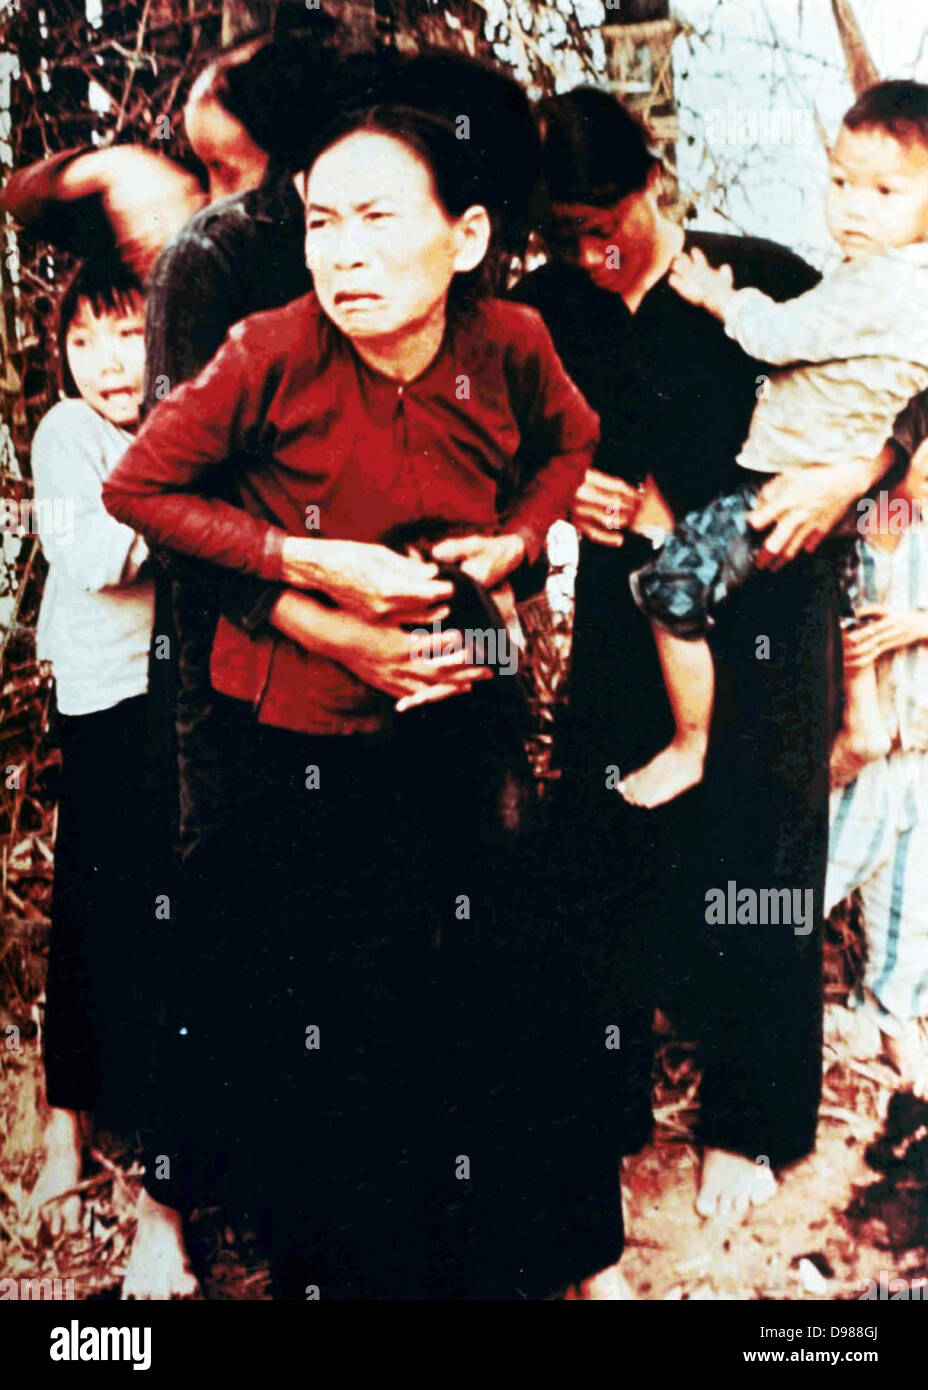 Das Massaker von My Lai, der Massenmord an 347 bis 504 unbewaffnete Bürger der Republik Vietnam (Südvietnam), fast ausschließlich Zivilisten und die meisten von ihnen Frauen und Kinder, durch die US-Streitkräfte am 16. März 1968 begangen. Frauen und Kinder in My Lai, Vietnam, kurz vor US-Soldaten erschossen und getötet. s Quelle Bericht von Armee review in My Lai Incident, Buch 6, 14. März 1970. Stockfoto